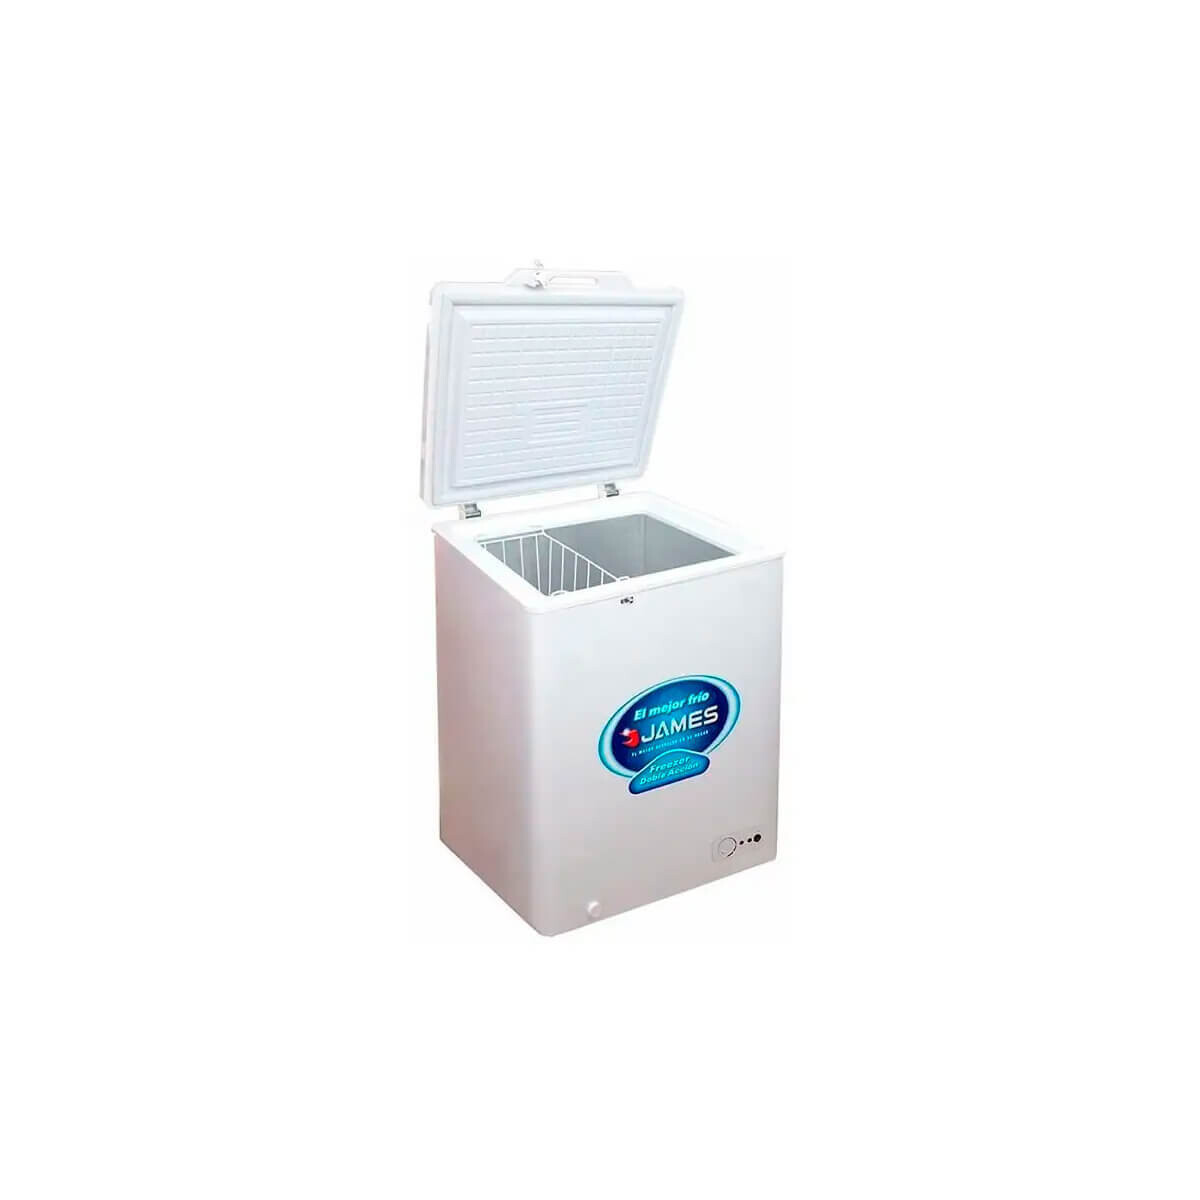 Freezer Horizontal James 100k, Heladera Freezer Doble Acción (PRECIO EN DOLARES iva inc)